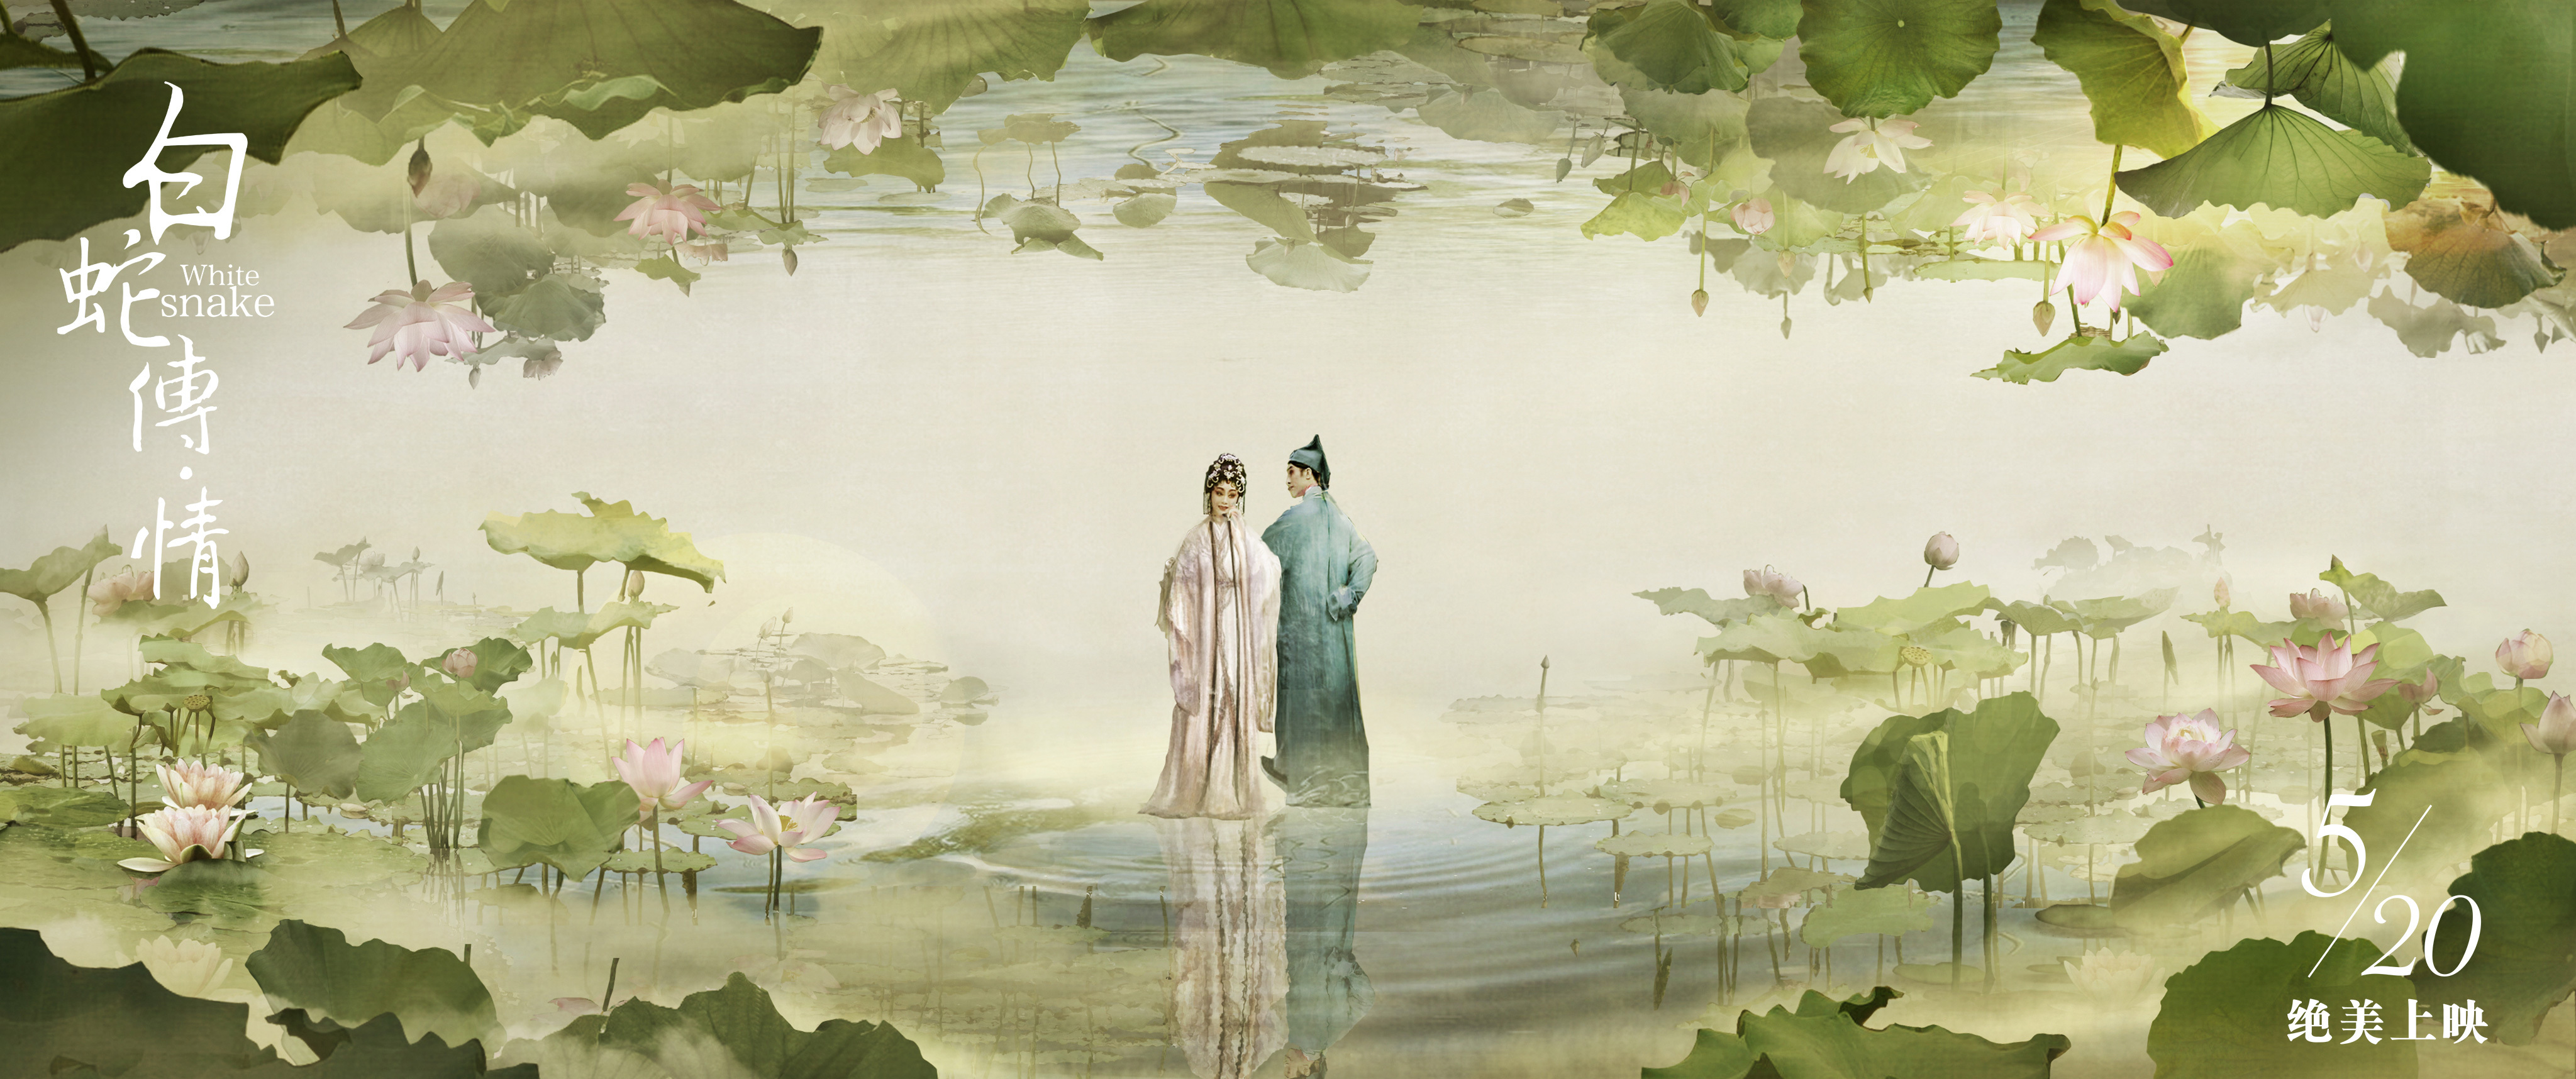 中国元素助推文化出海 《白蛇传·情》古典美跨时空征服观众